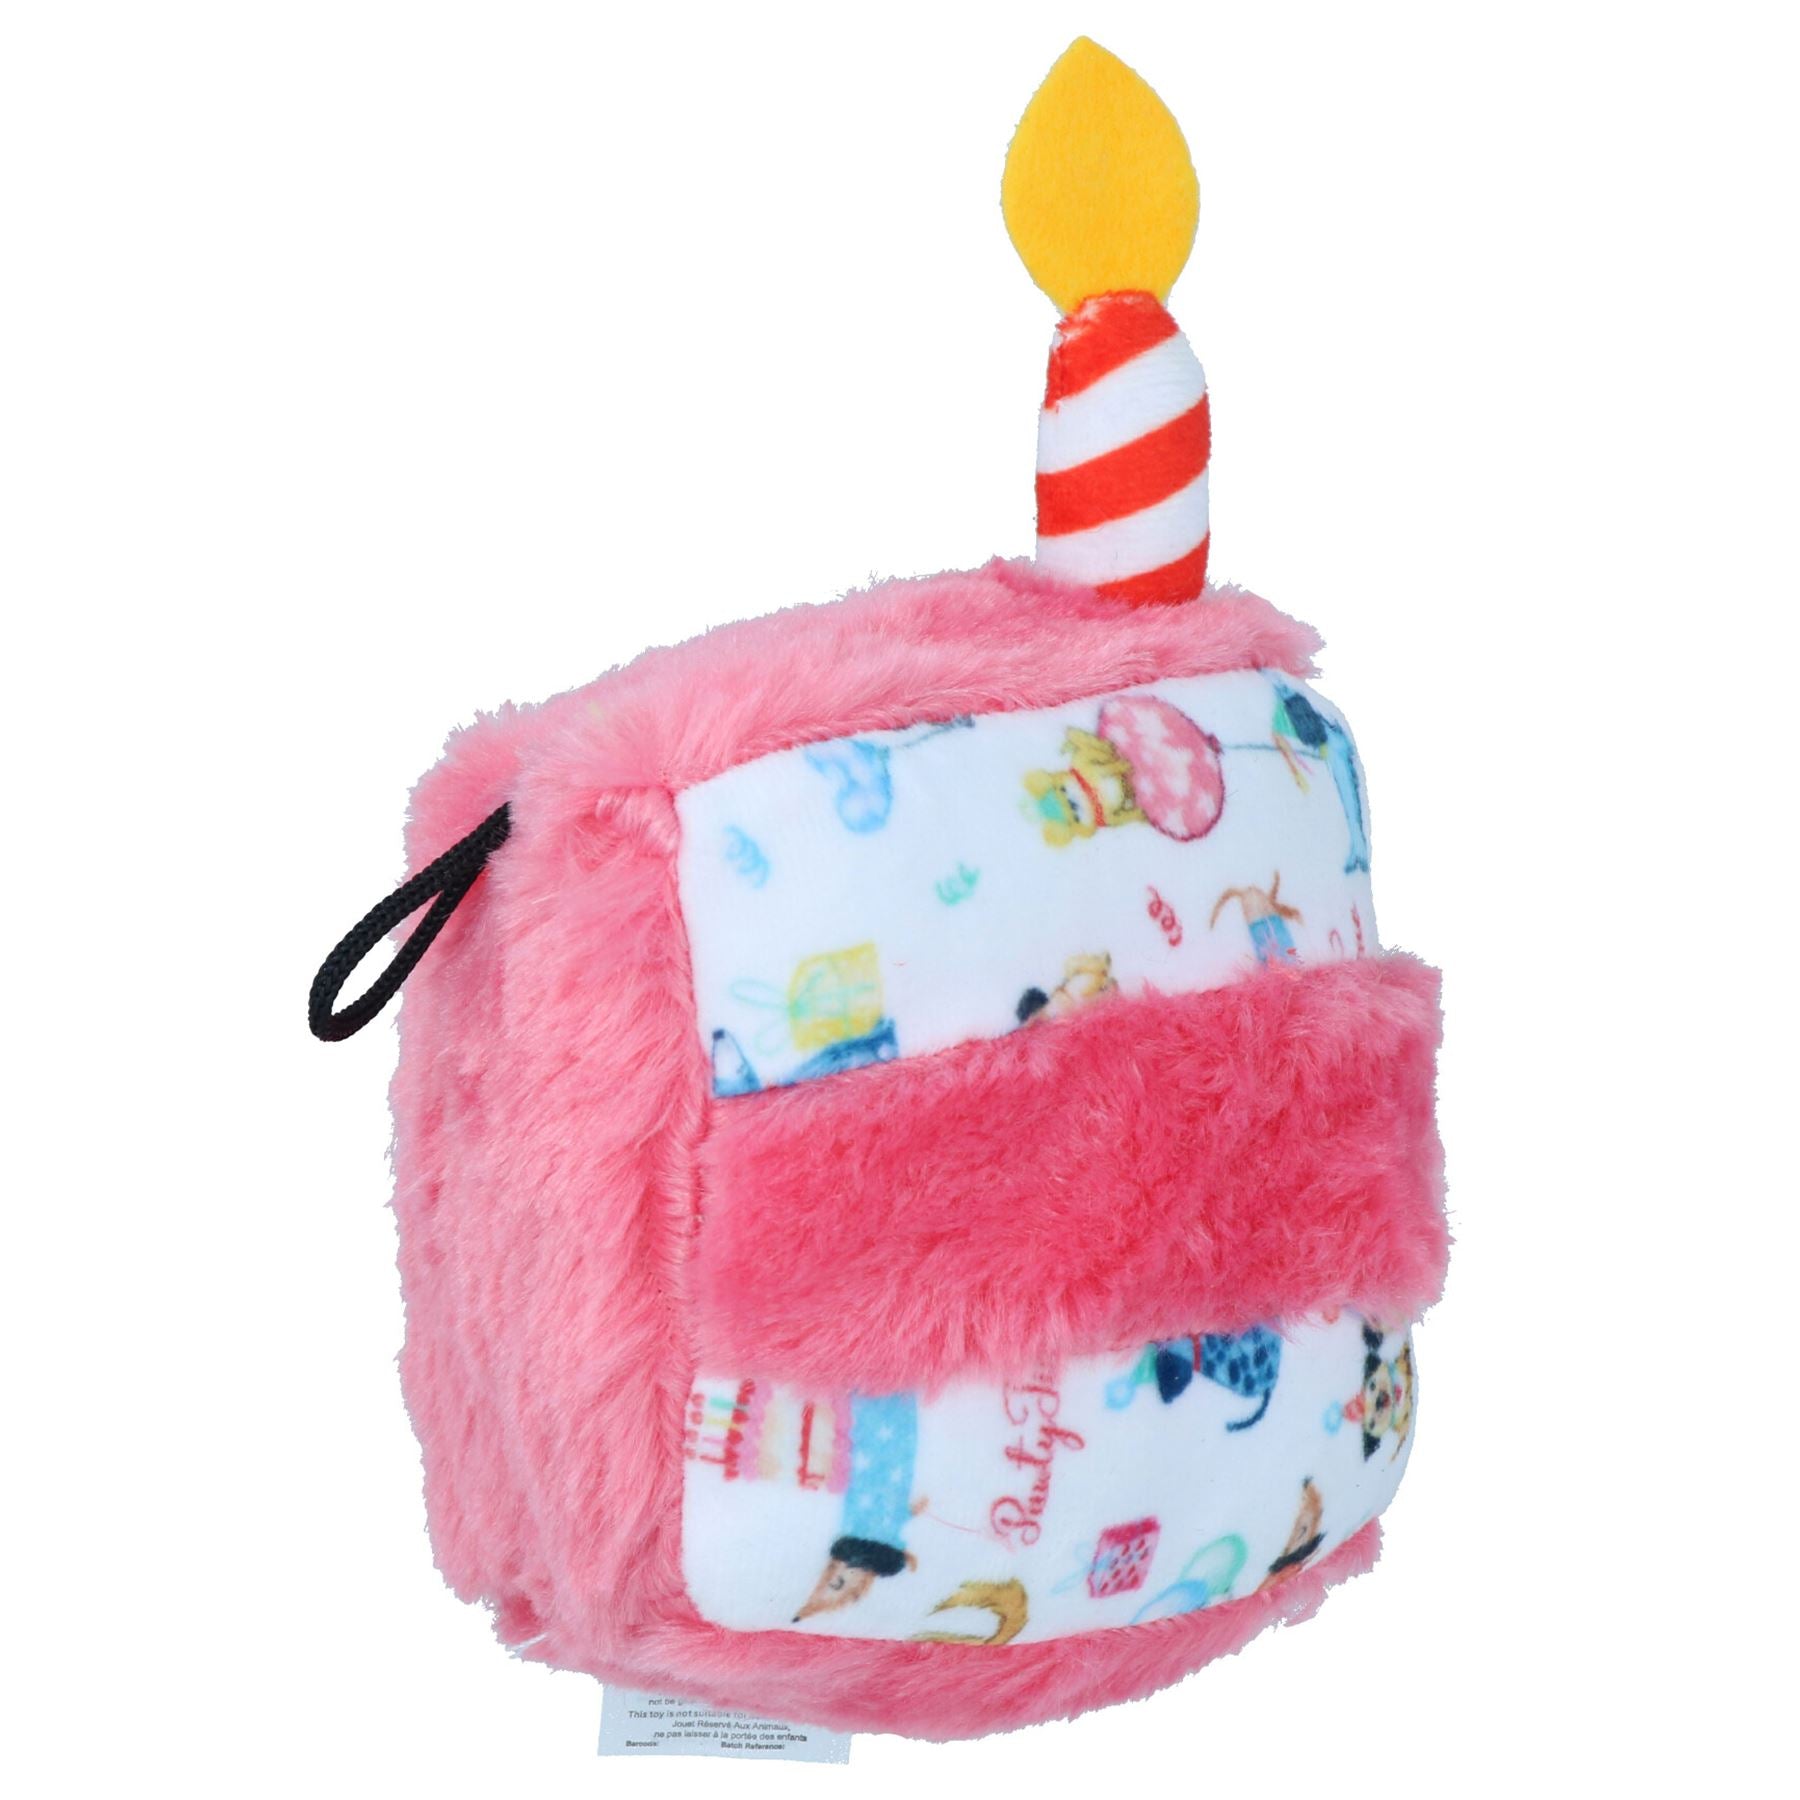 Super Soft Plush Squeaky Birthday Cake Piece Toy Dog Puppy Happy Birthday Gift